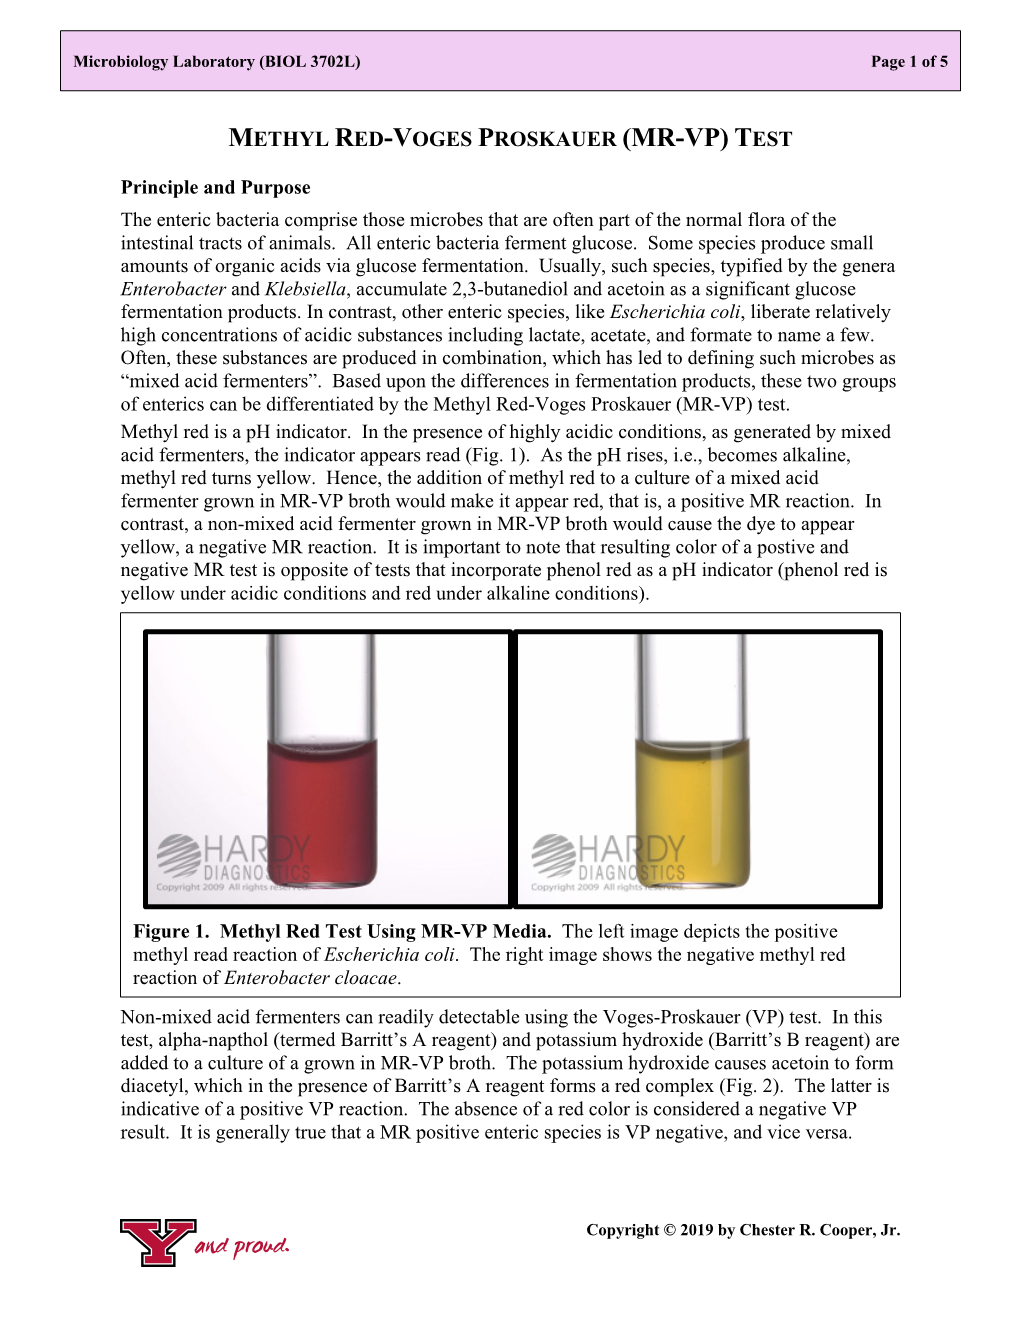 Methyl Red-Voges Proskauer Tests